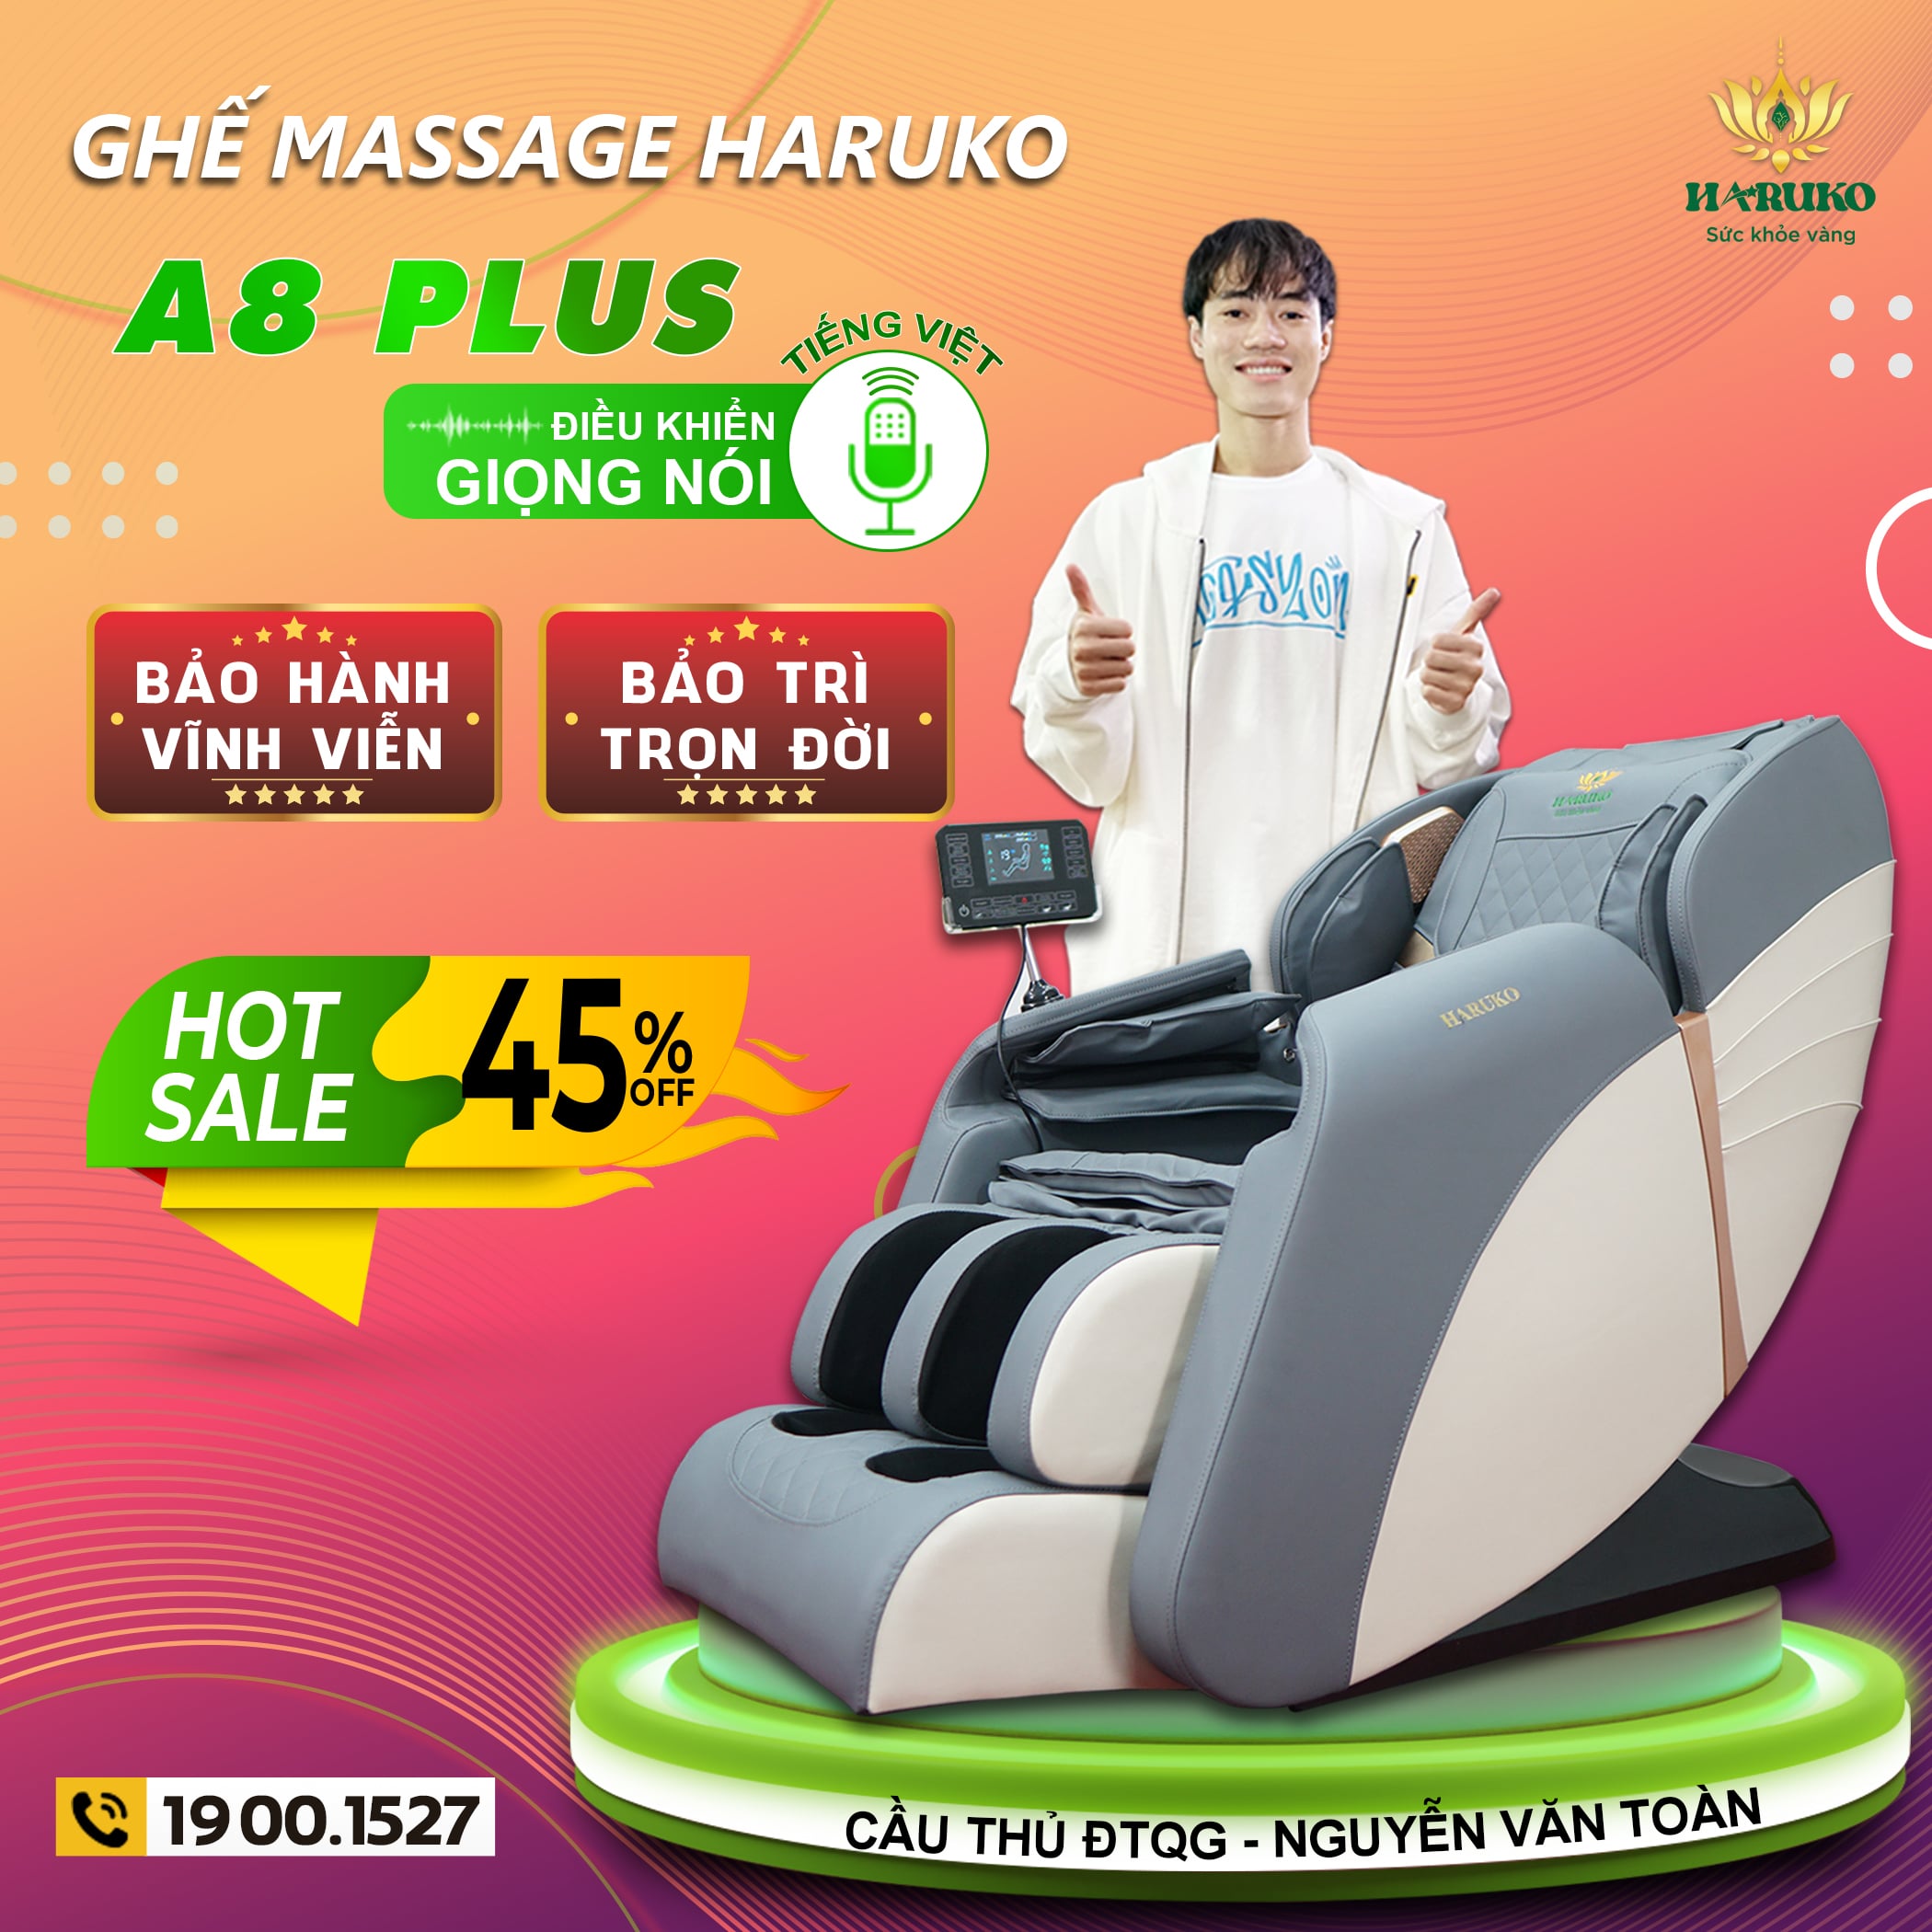 Ghế massage A8 Plus là dòng sản phẩm siêu phẩm được ưa chuộng kể từ lần đầu tiên ra mắt